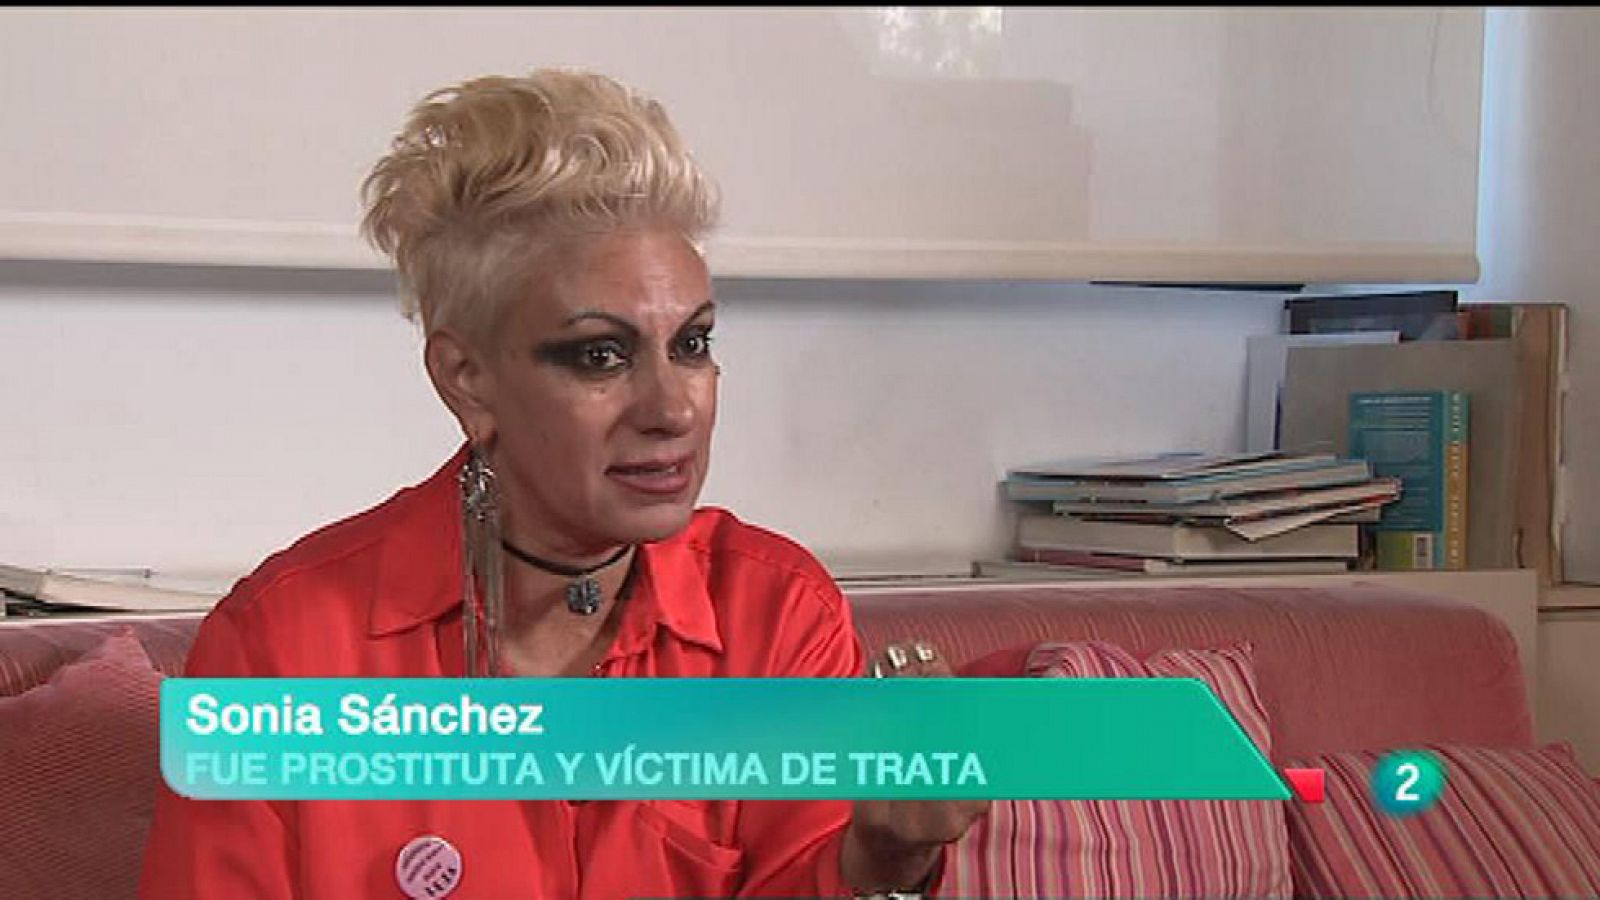 La 2 Noticias - La trata y la desgarradora experiencia de Sonia, víctima y exprostituta